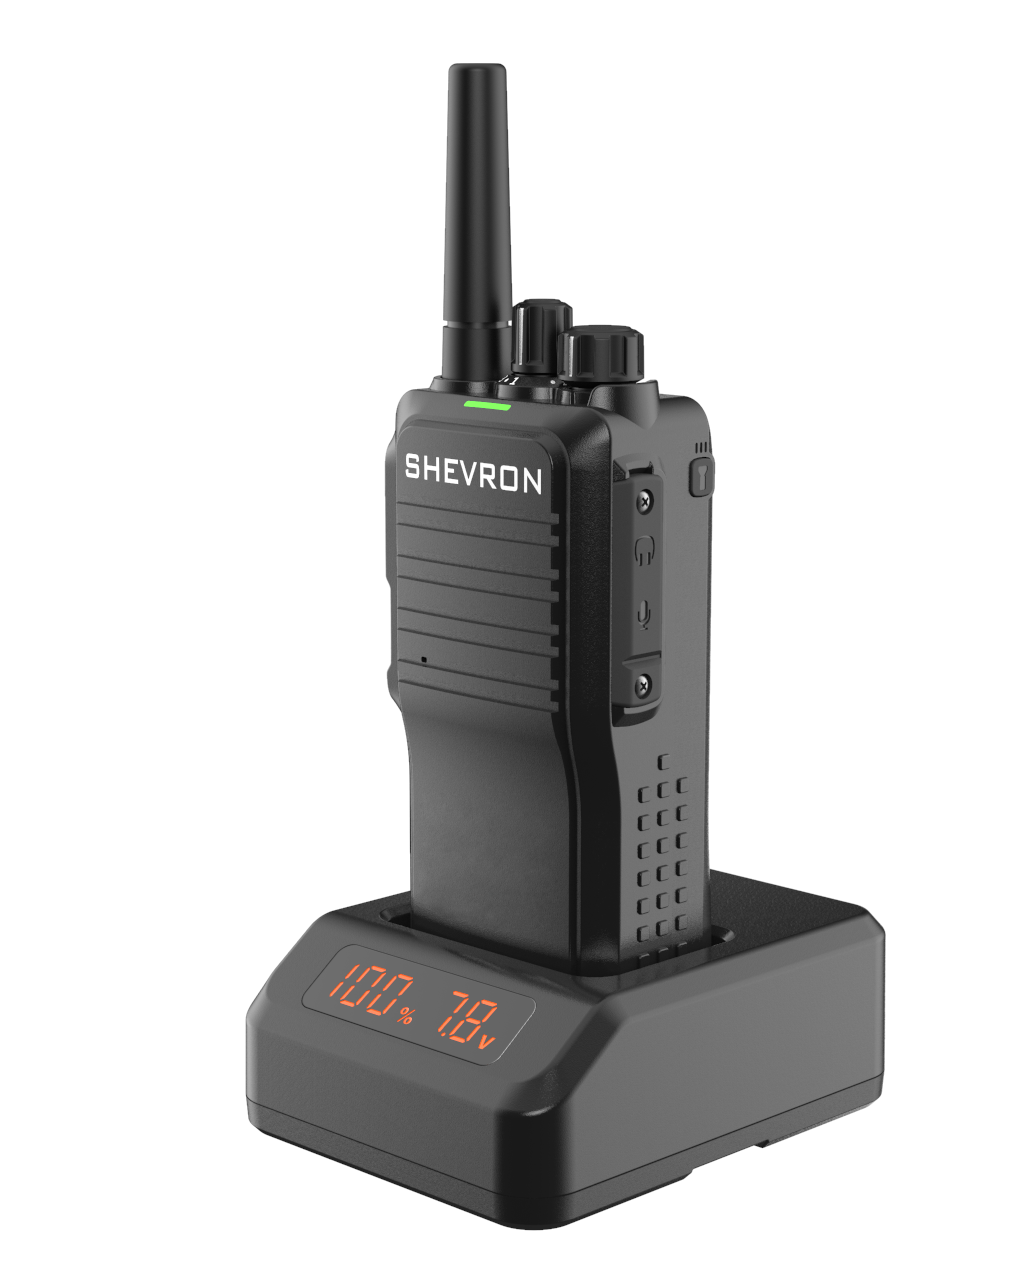 Рация Шеврон Т-34 U3 - профессиональная радиостанция для работы в VHF-диапазоне частот, предназначенная как для любительского, так и для профессионального использования.